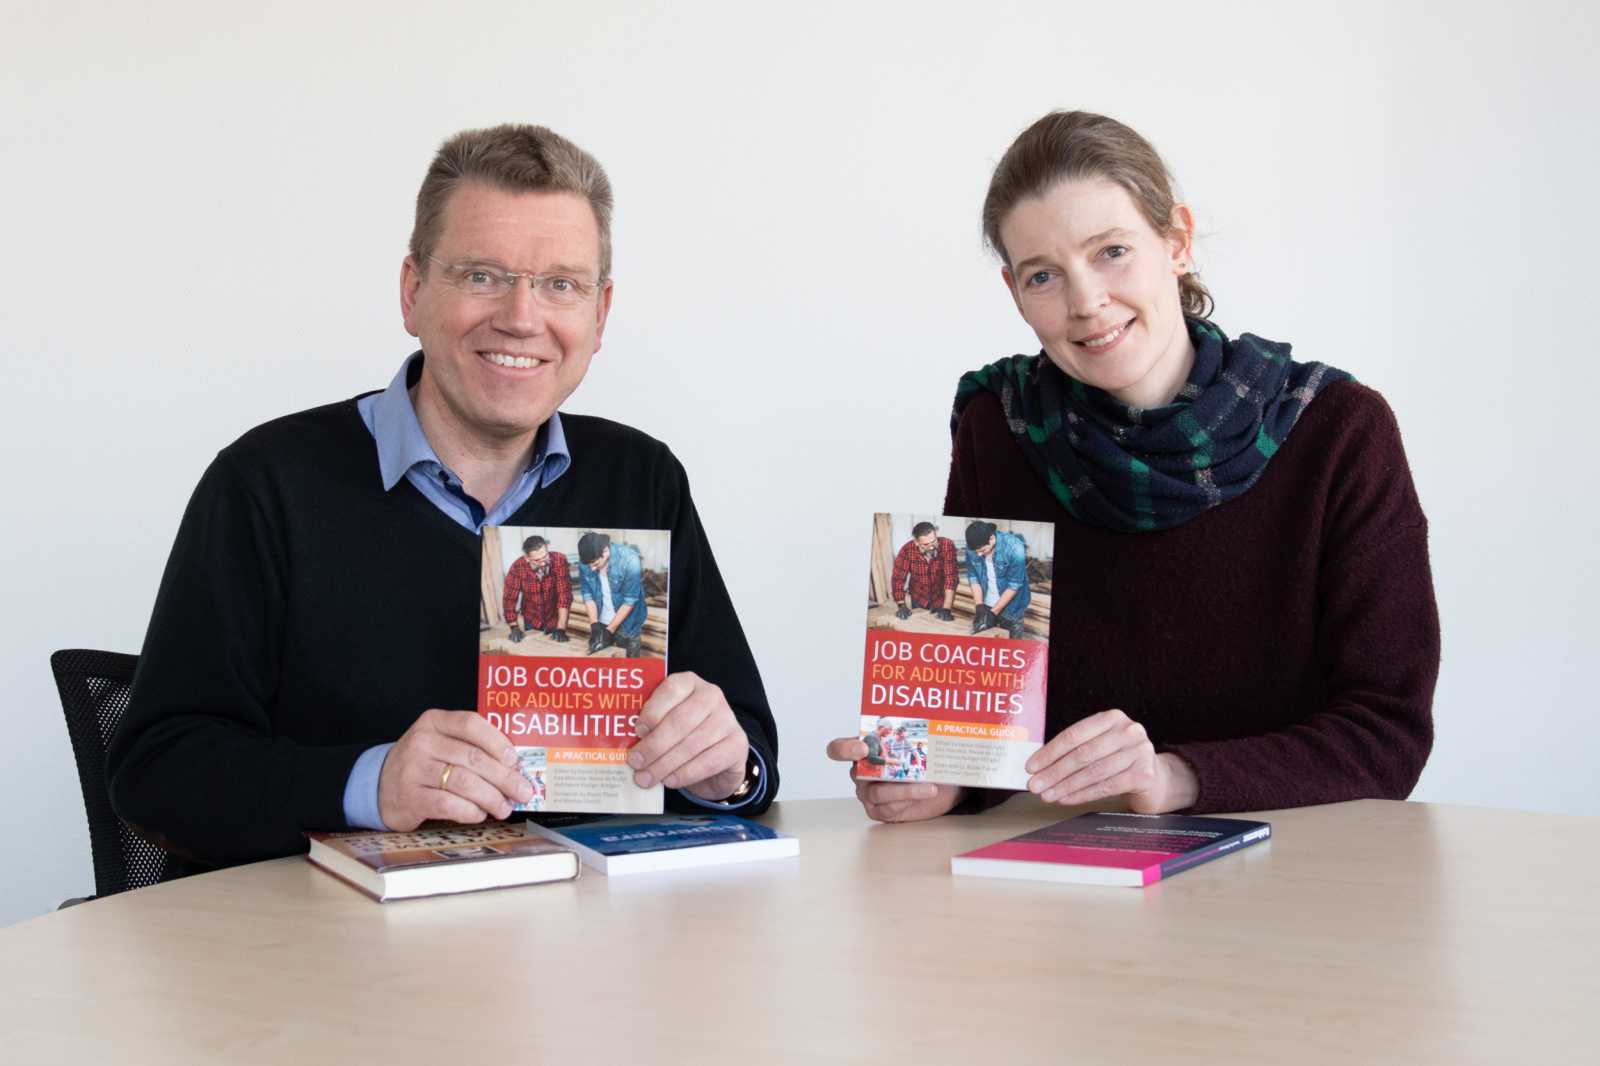 Prof. Dr. Hanns Rüdiger Röttgers und Caterina Metje vom Fachbereich Sozialwesen haben an dem Buch „Job Coaches for adults with disabilities“ mitgewirkt. (Foto: FH Münster/Pressestelle)